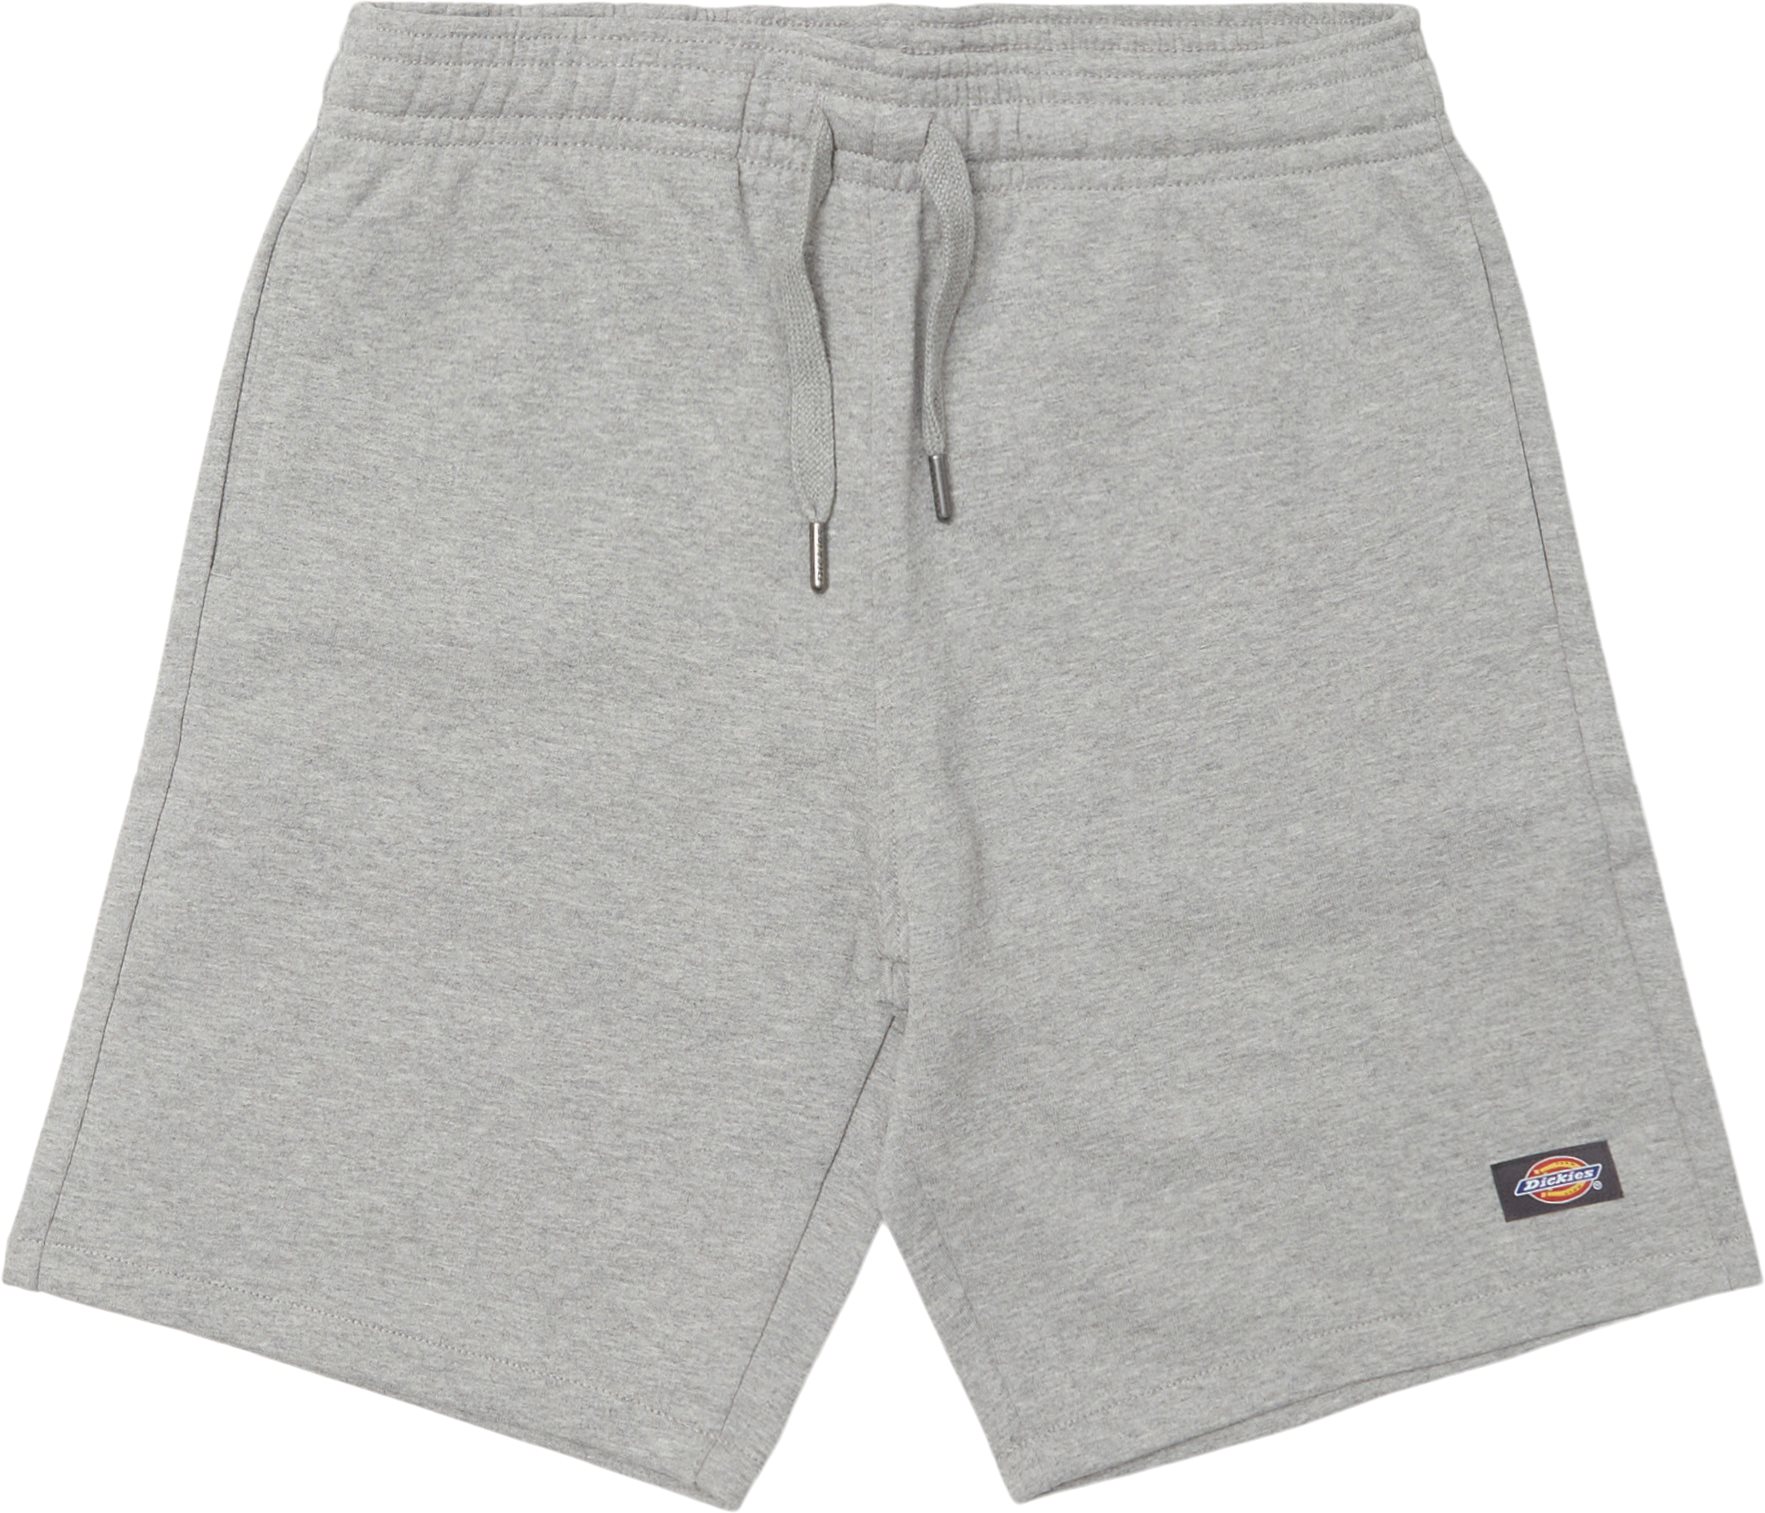 Champlin sweatshorts - Shorts - Regular fit - Grå